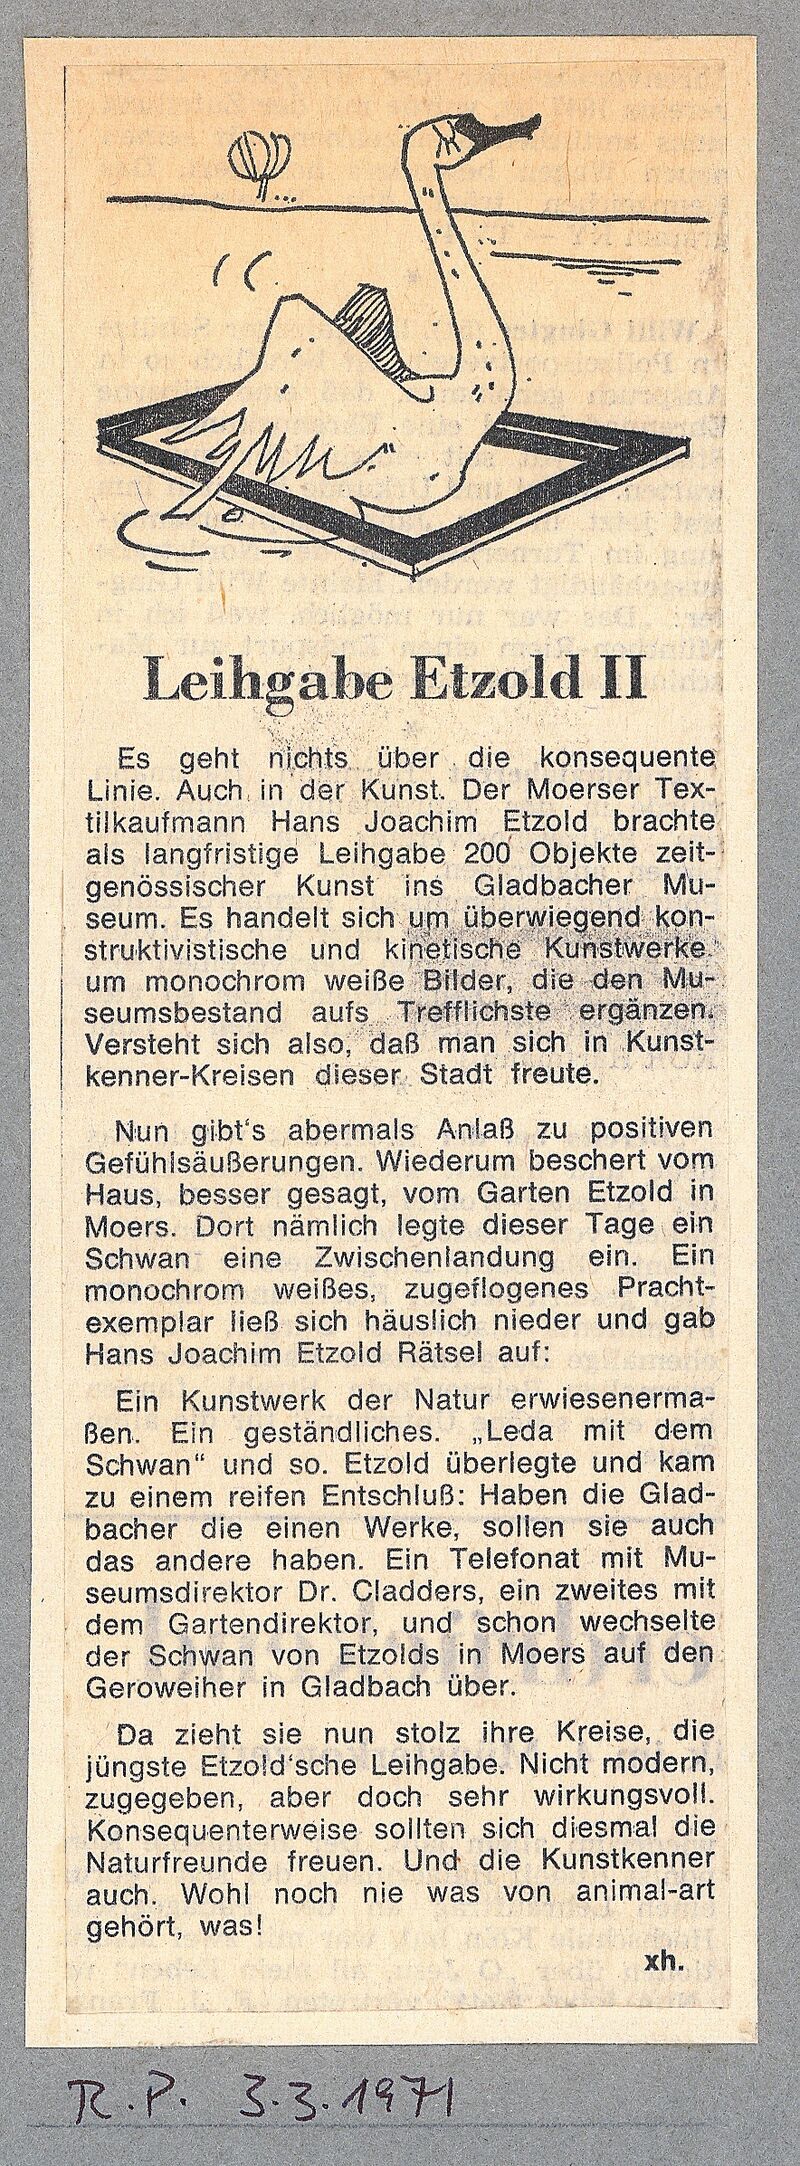 Rheinische Post, 3.3.1971